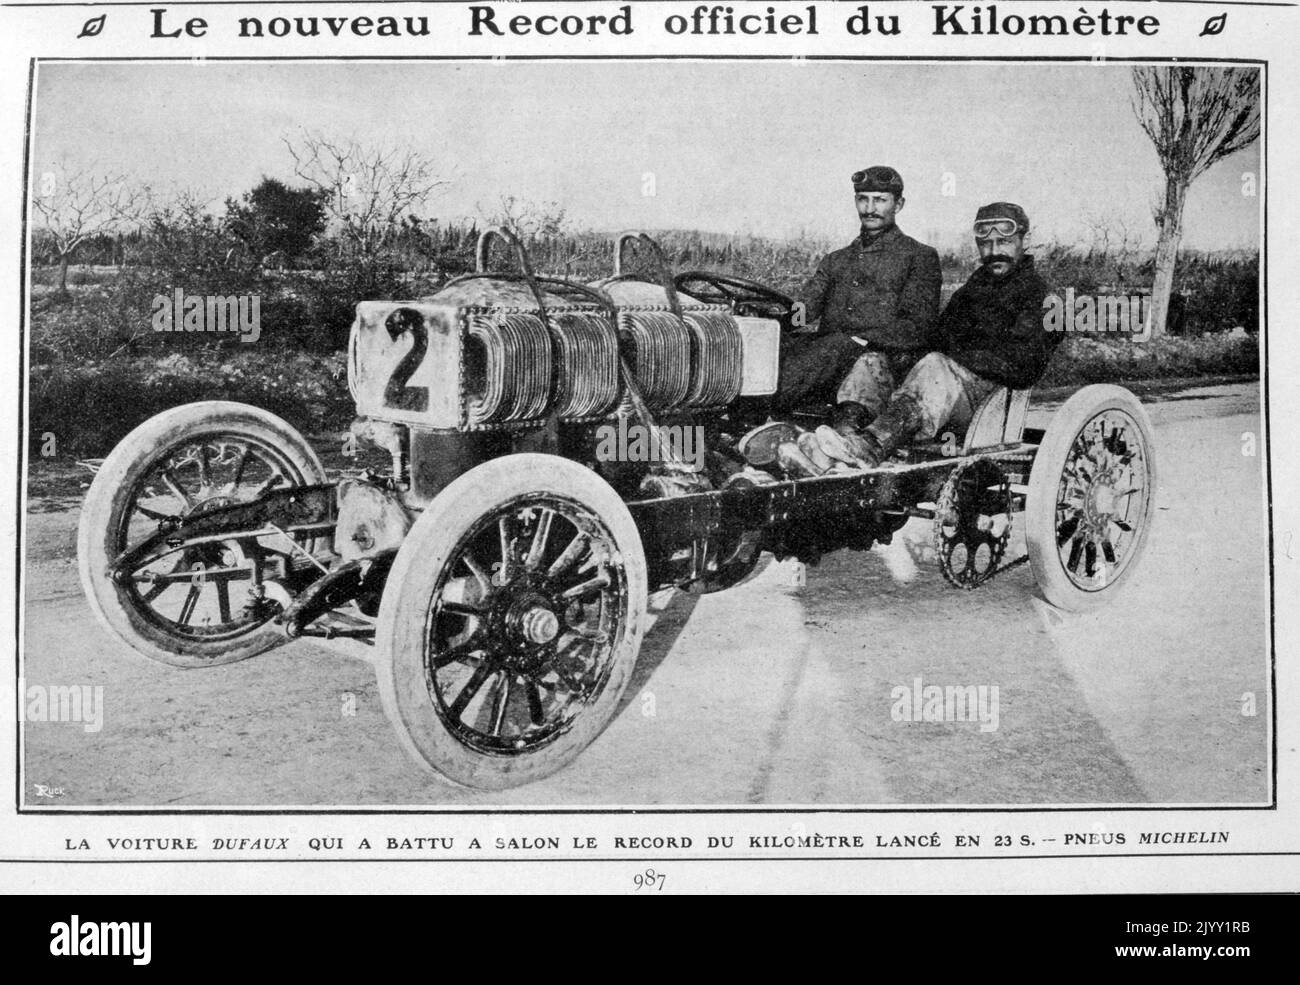 Dufaux war ein Schweizer Automobilhersteller, der 1904 von Charles und Frederic Dufaux in Genf gegründet wurde. Vierzylinder-Motor mit 26.400 ccm Hubraum. Dieser große Motor lieferte mehr als 150 PS (110 kW). Frederic Dufaux brach mit diesem Auto am 13. November 1905 mit einer Geschwindigkeit von 158 km/h (98 mph) den Weltrekord. Er absolvierte einen Kilometer in nur 23 Sekunden. Stockfoto